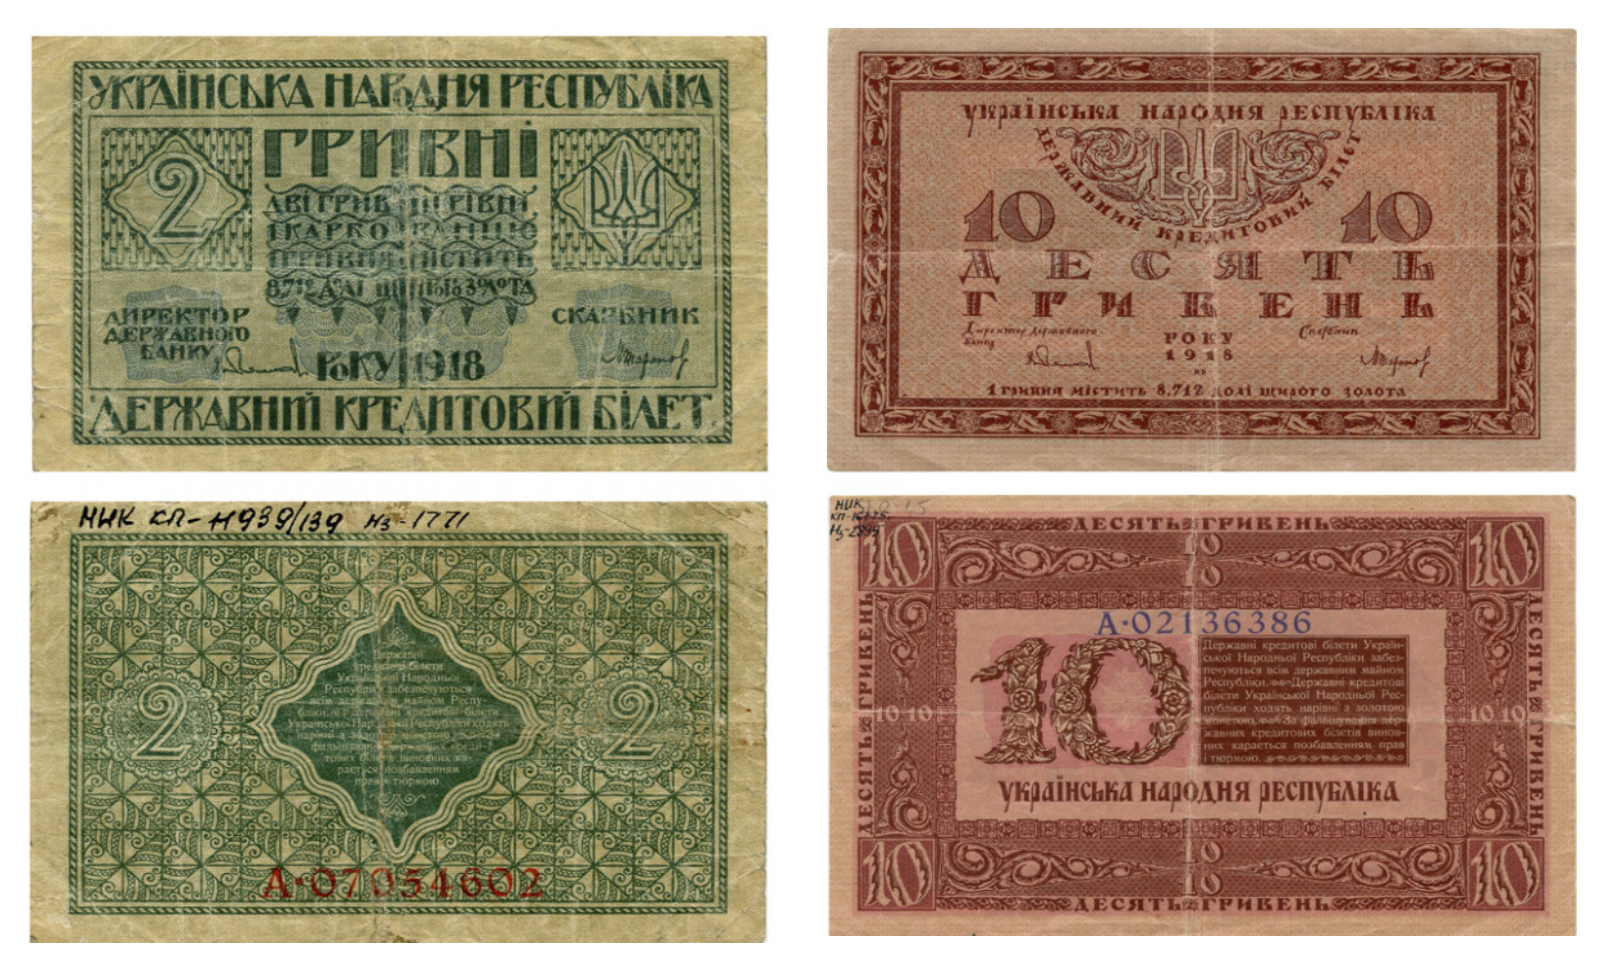 Банкнота номіналом 2 гривні (автор проєкту В. Кричевський) та Банкнота номіналом 10 гривень (автор проєкту Г. Нарбут)